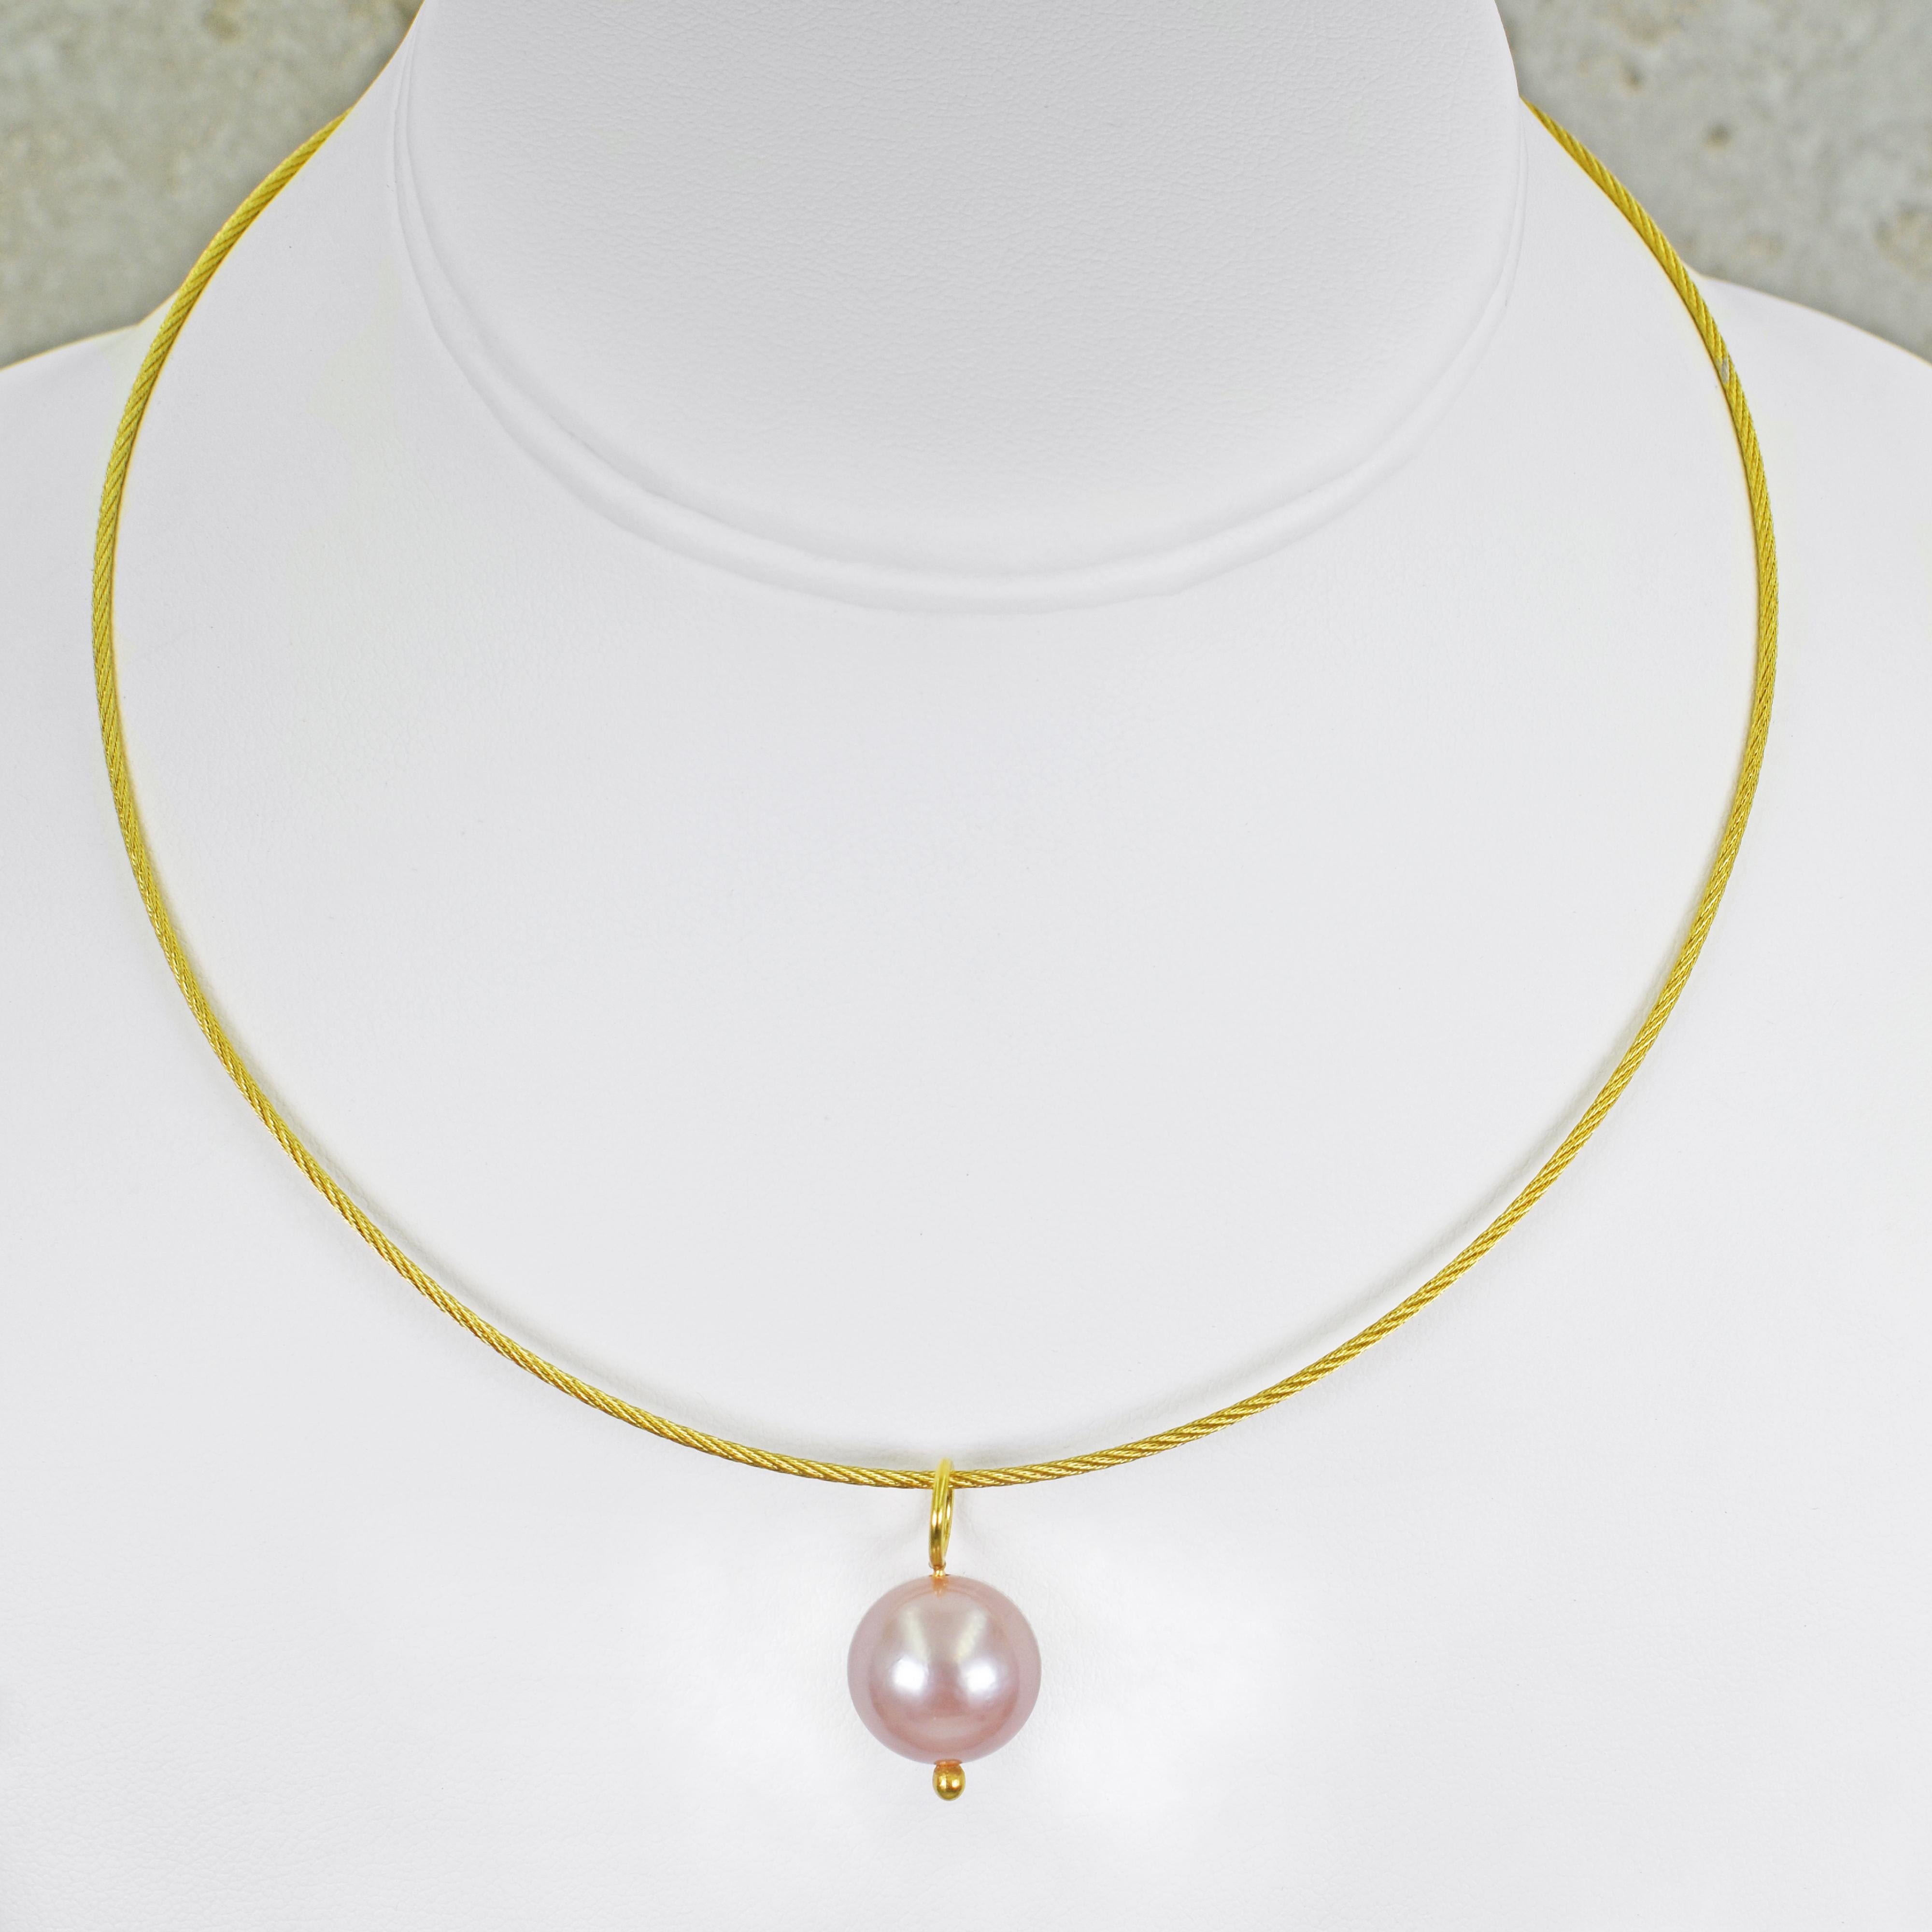 Rosa Süßwasserperle und 18k Gelbgold Anhänger Halskette und Ohrring-Set. Halskette besteht aus einem runden 14,5 mm rosa Perle Anhänger auf einem 16-Zoll 18k Gold gewebt Kabel Draht Halskette und mit einem Sicherheitsverschluss (Krokodil-Verschluss)